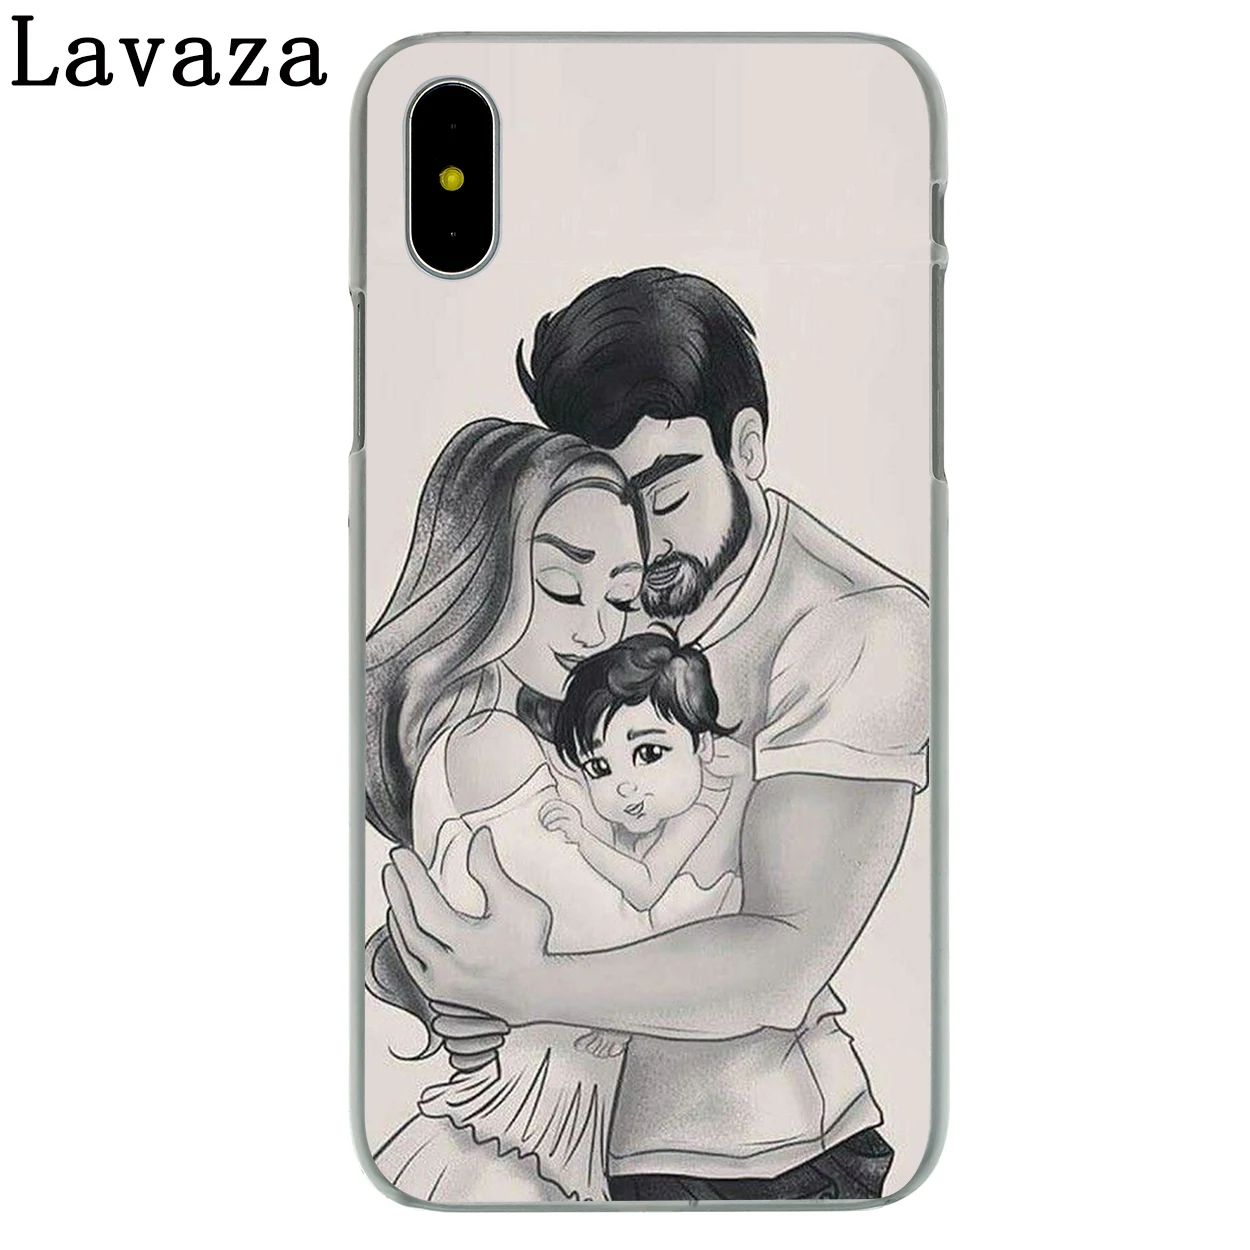 Lavaza мама папа ребенок семейный чехол для телефона для Apple iPhone 4 4S 5C 5S SE 6 6S 7 8 Plus 10 X Xr Xs Max 6Plus 7Plus - Цвет: 12